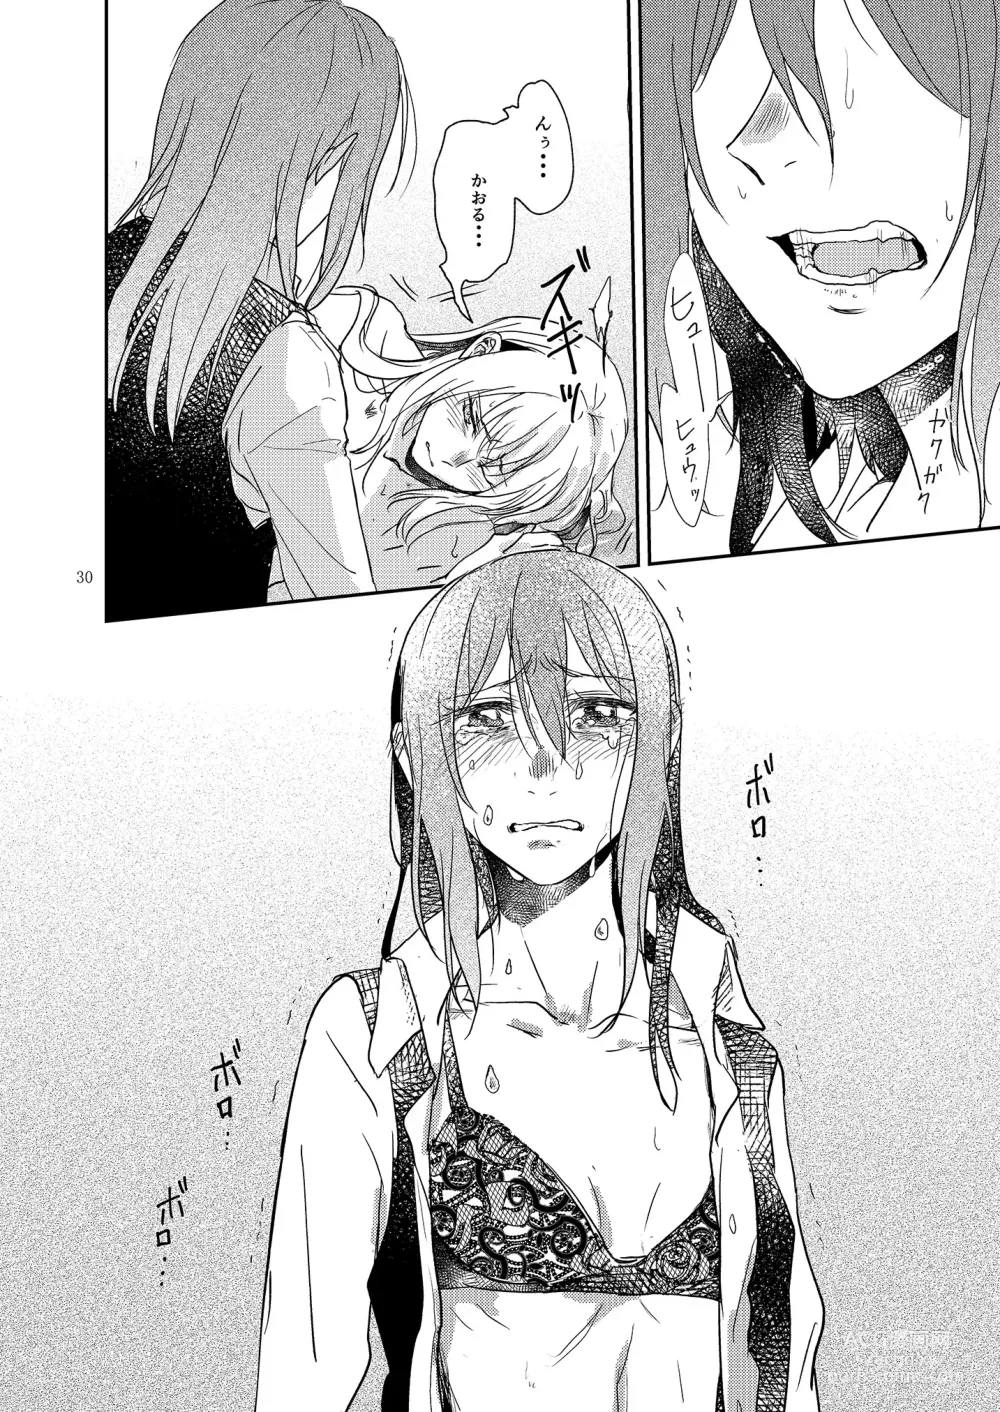 Page 30 of doujinshi Kimi no Tame ni Watashi ni wa